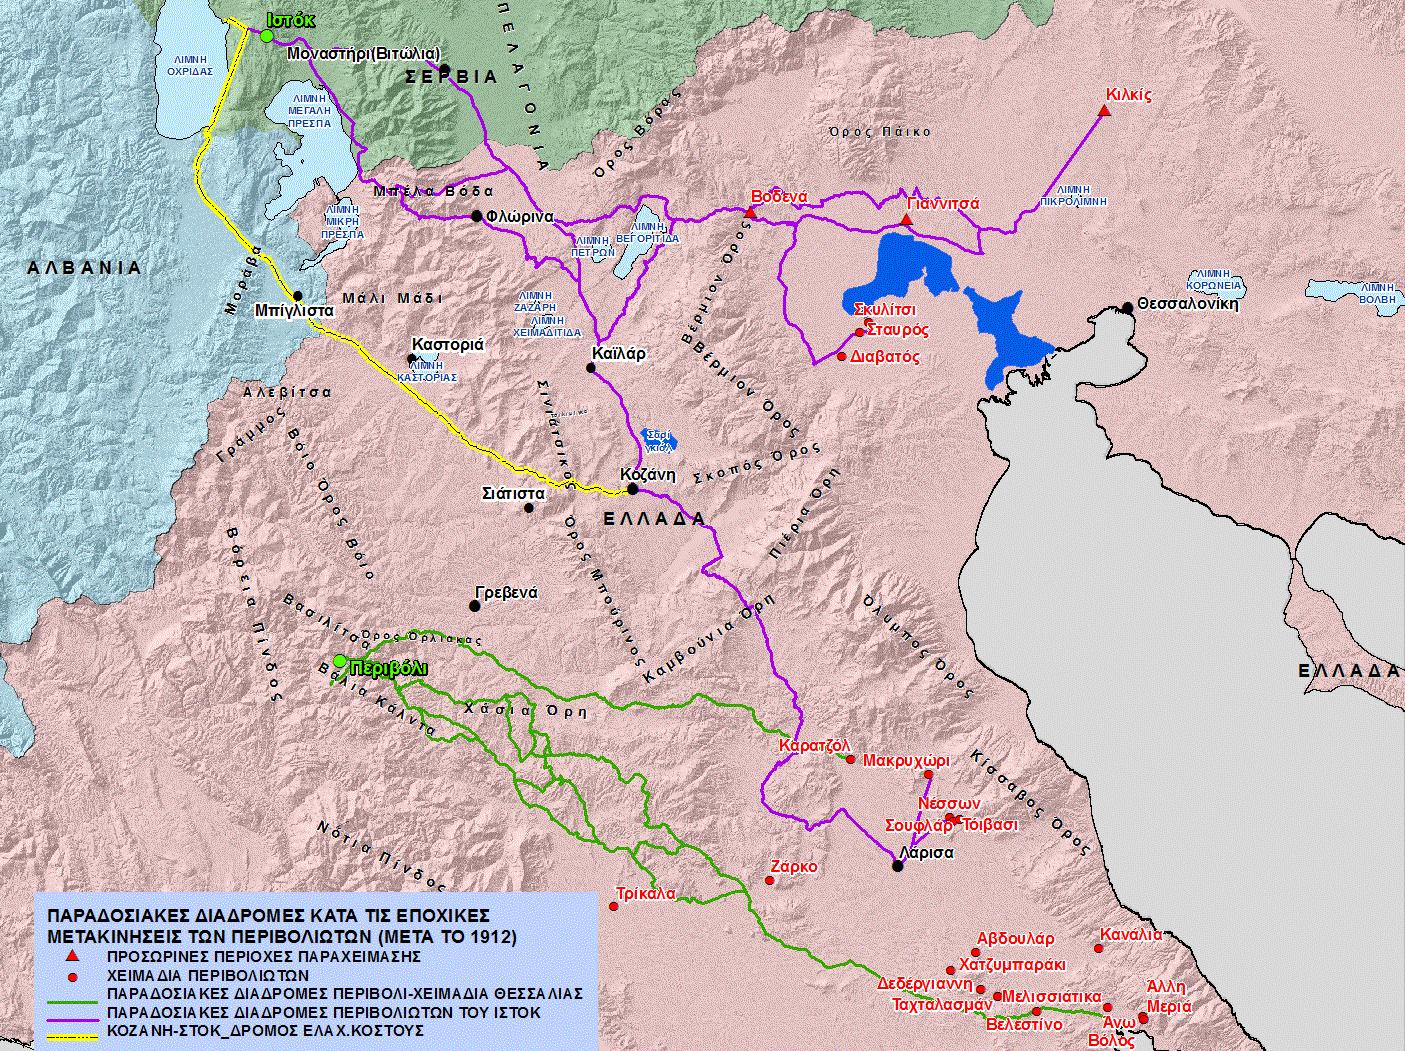 Χάρτης 11. Οι διαδρομές των Περιβολιωτών από το Περιβόλι και το Ιστόκ προς τα χειμαδιά Θεσσαλίας και Κεντρ. Μακεδονίας μετά το 1912, και ο δρόμος ελάχιστου κόστους στο τμήμα Κοζάνη-Ιστόκ της διαδρομής Θεσσαλία-Ιστόκ.